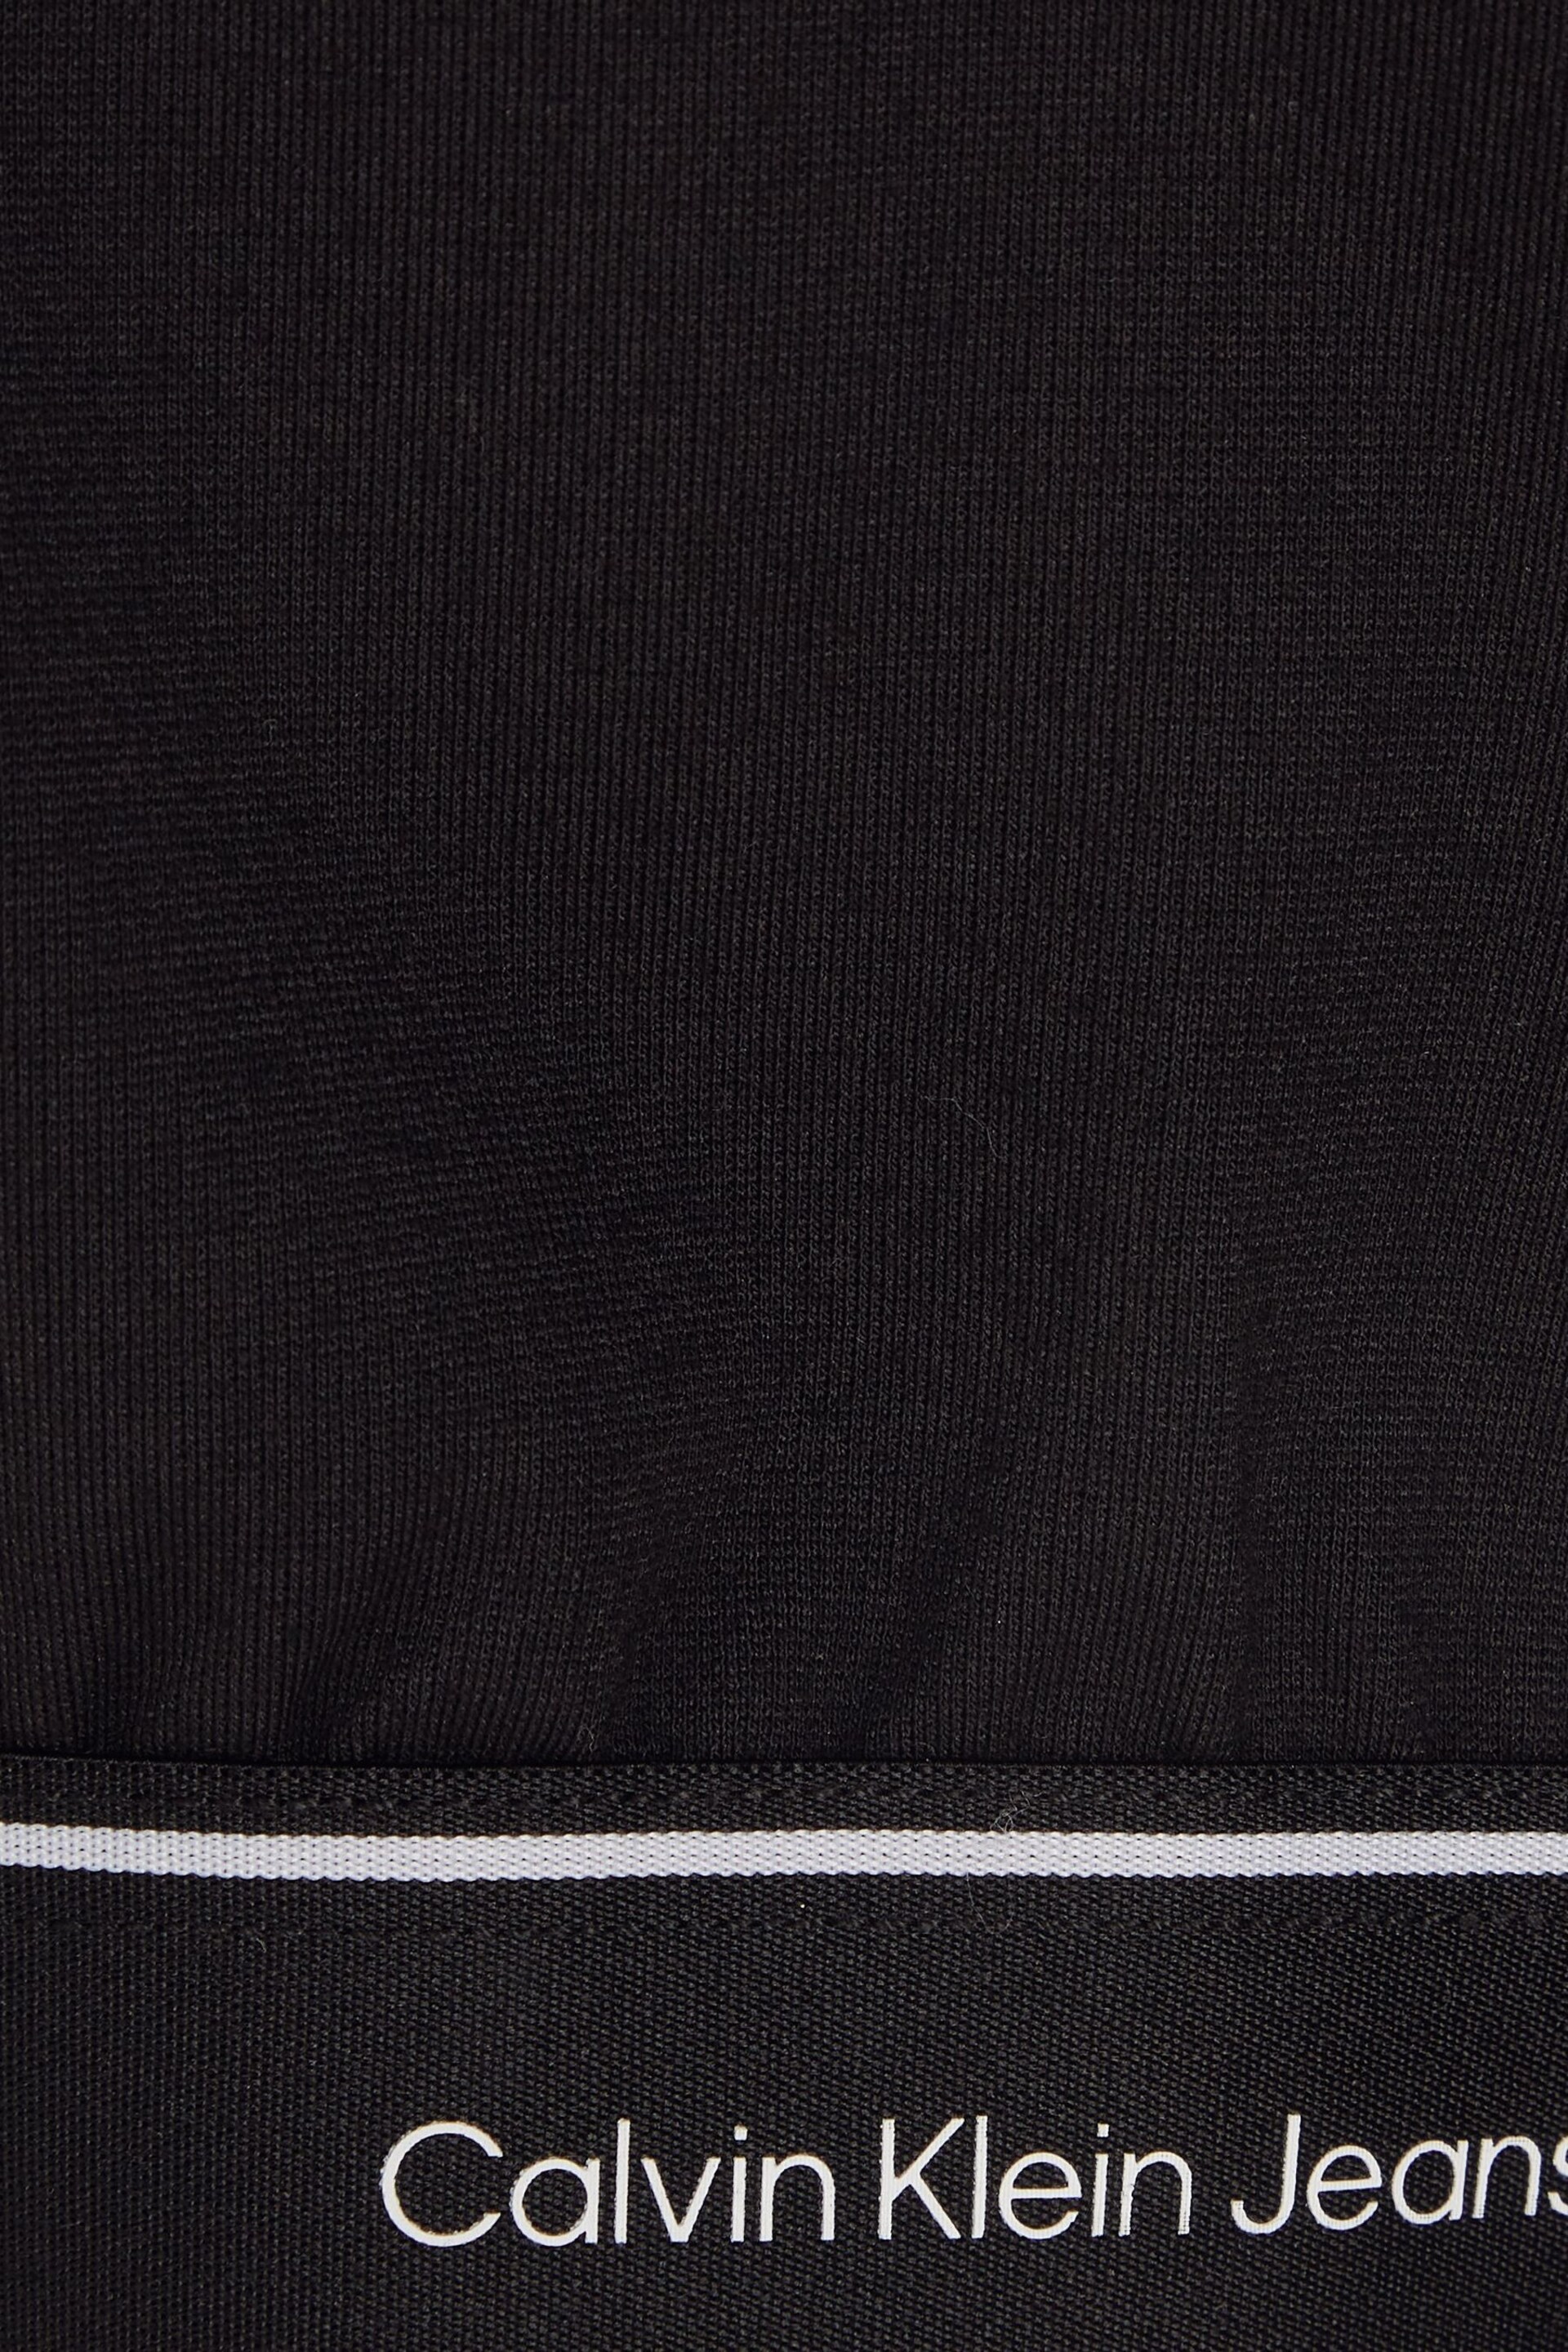 Calvin Klein Black Logo Tape Zip Jacket - Image 6 of 6